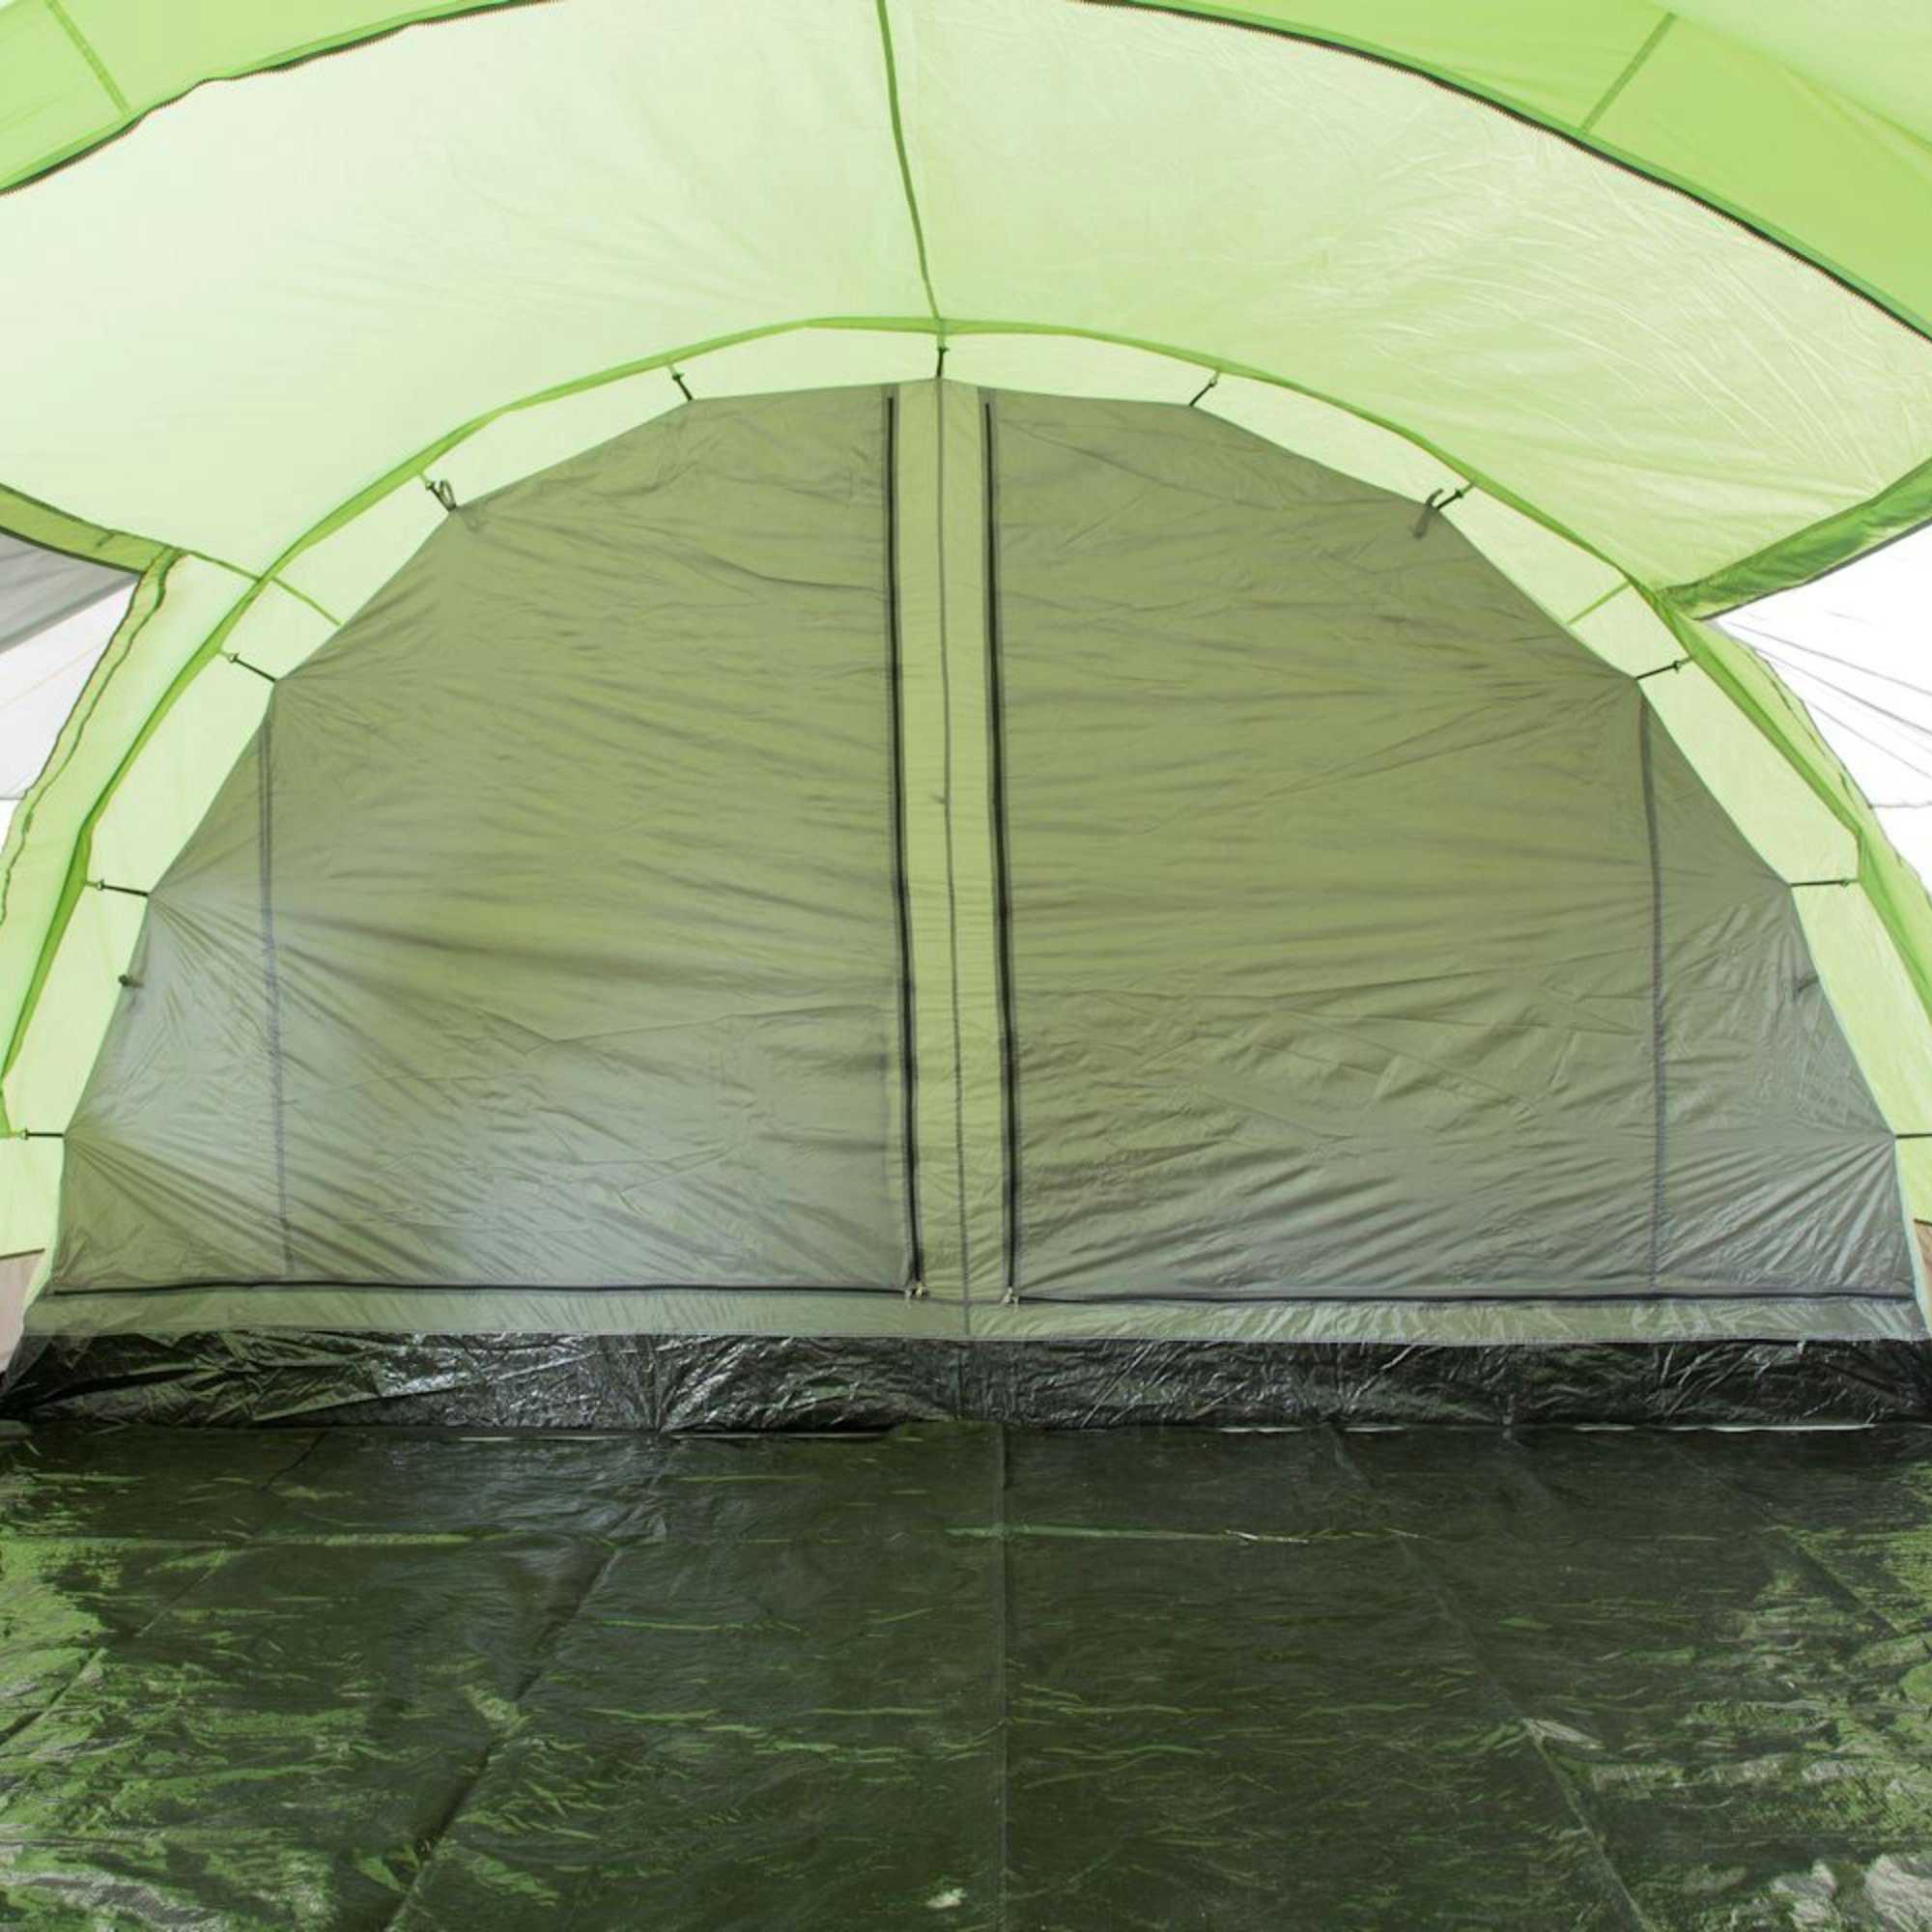 CampFeuer Personen, Tunnelzelt mm 6 Relax6 Grün/Grau, 6 5000 Zelt für Personen: Wassersäule,